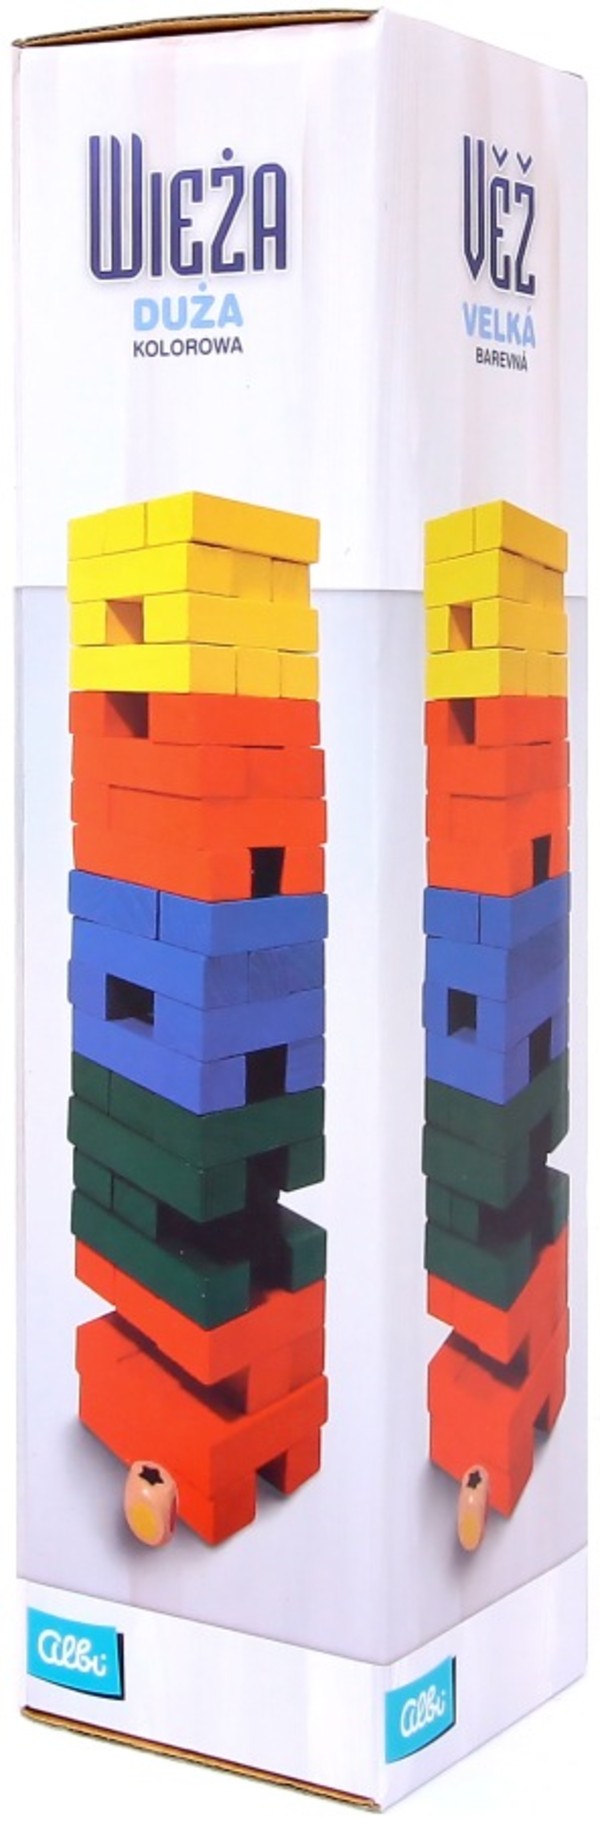 Wieża - Duża Kolorowa